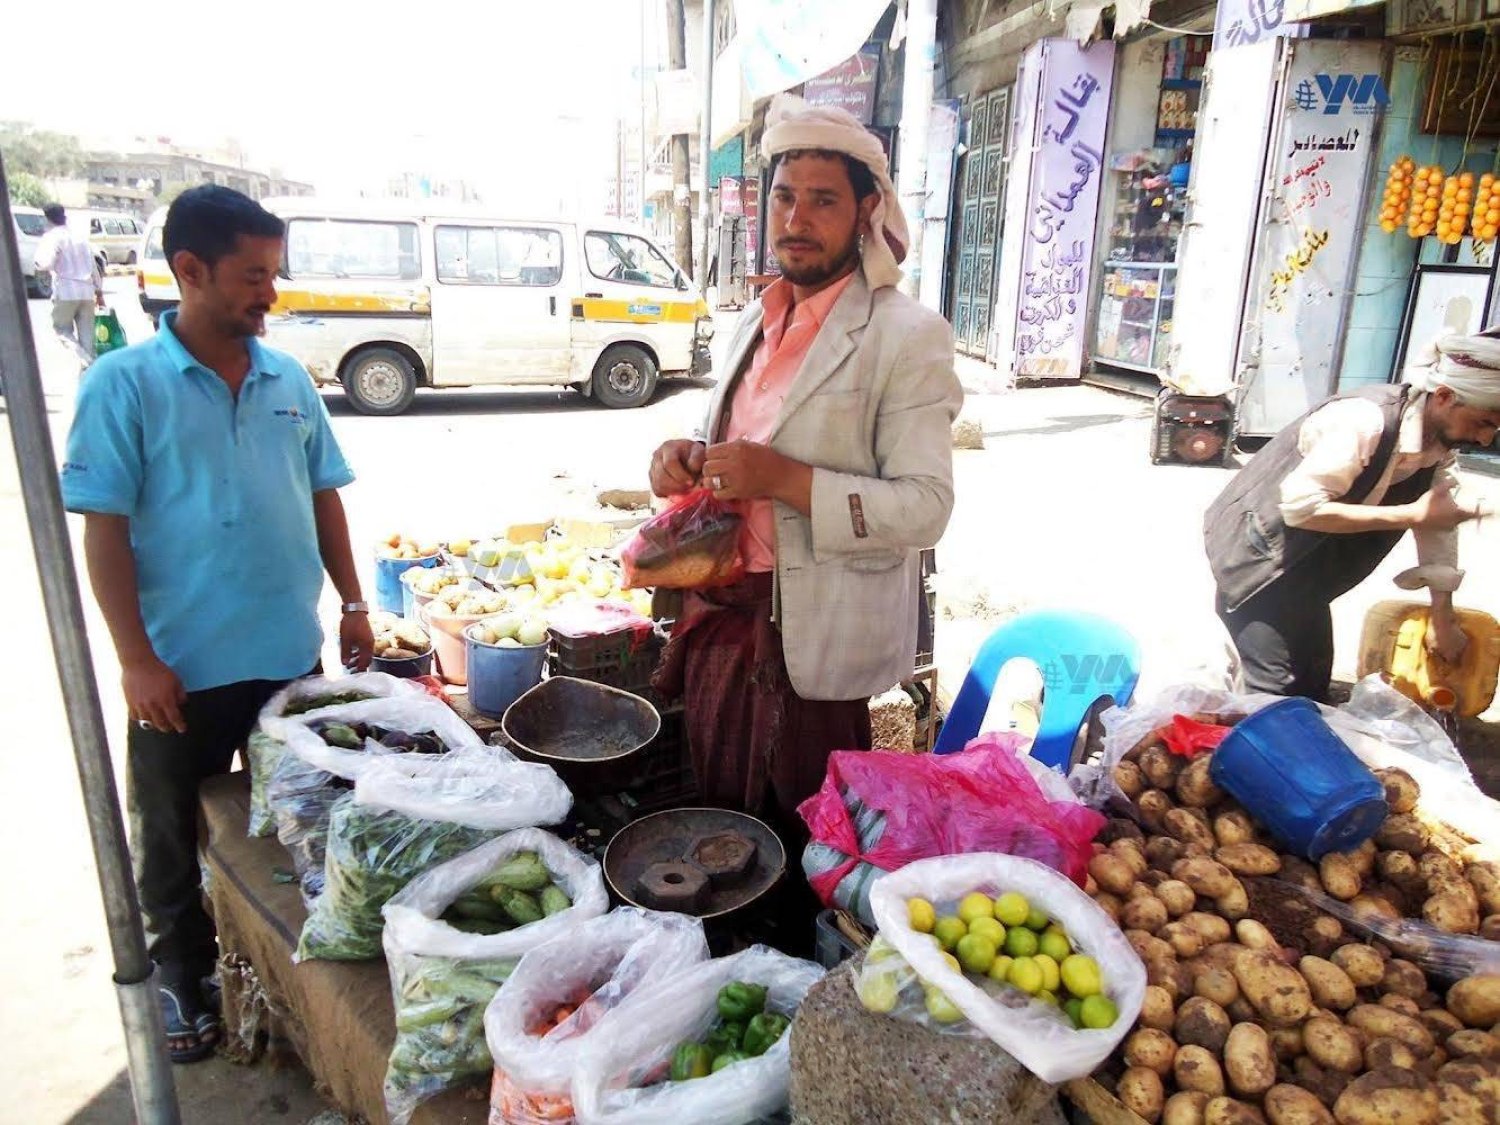 عدد الأسر اليمنية التي تعاني عدم كفاية الاستهلاك الغذائي ارتفع إلى 49 % (إعلام محلي)